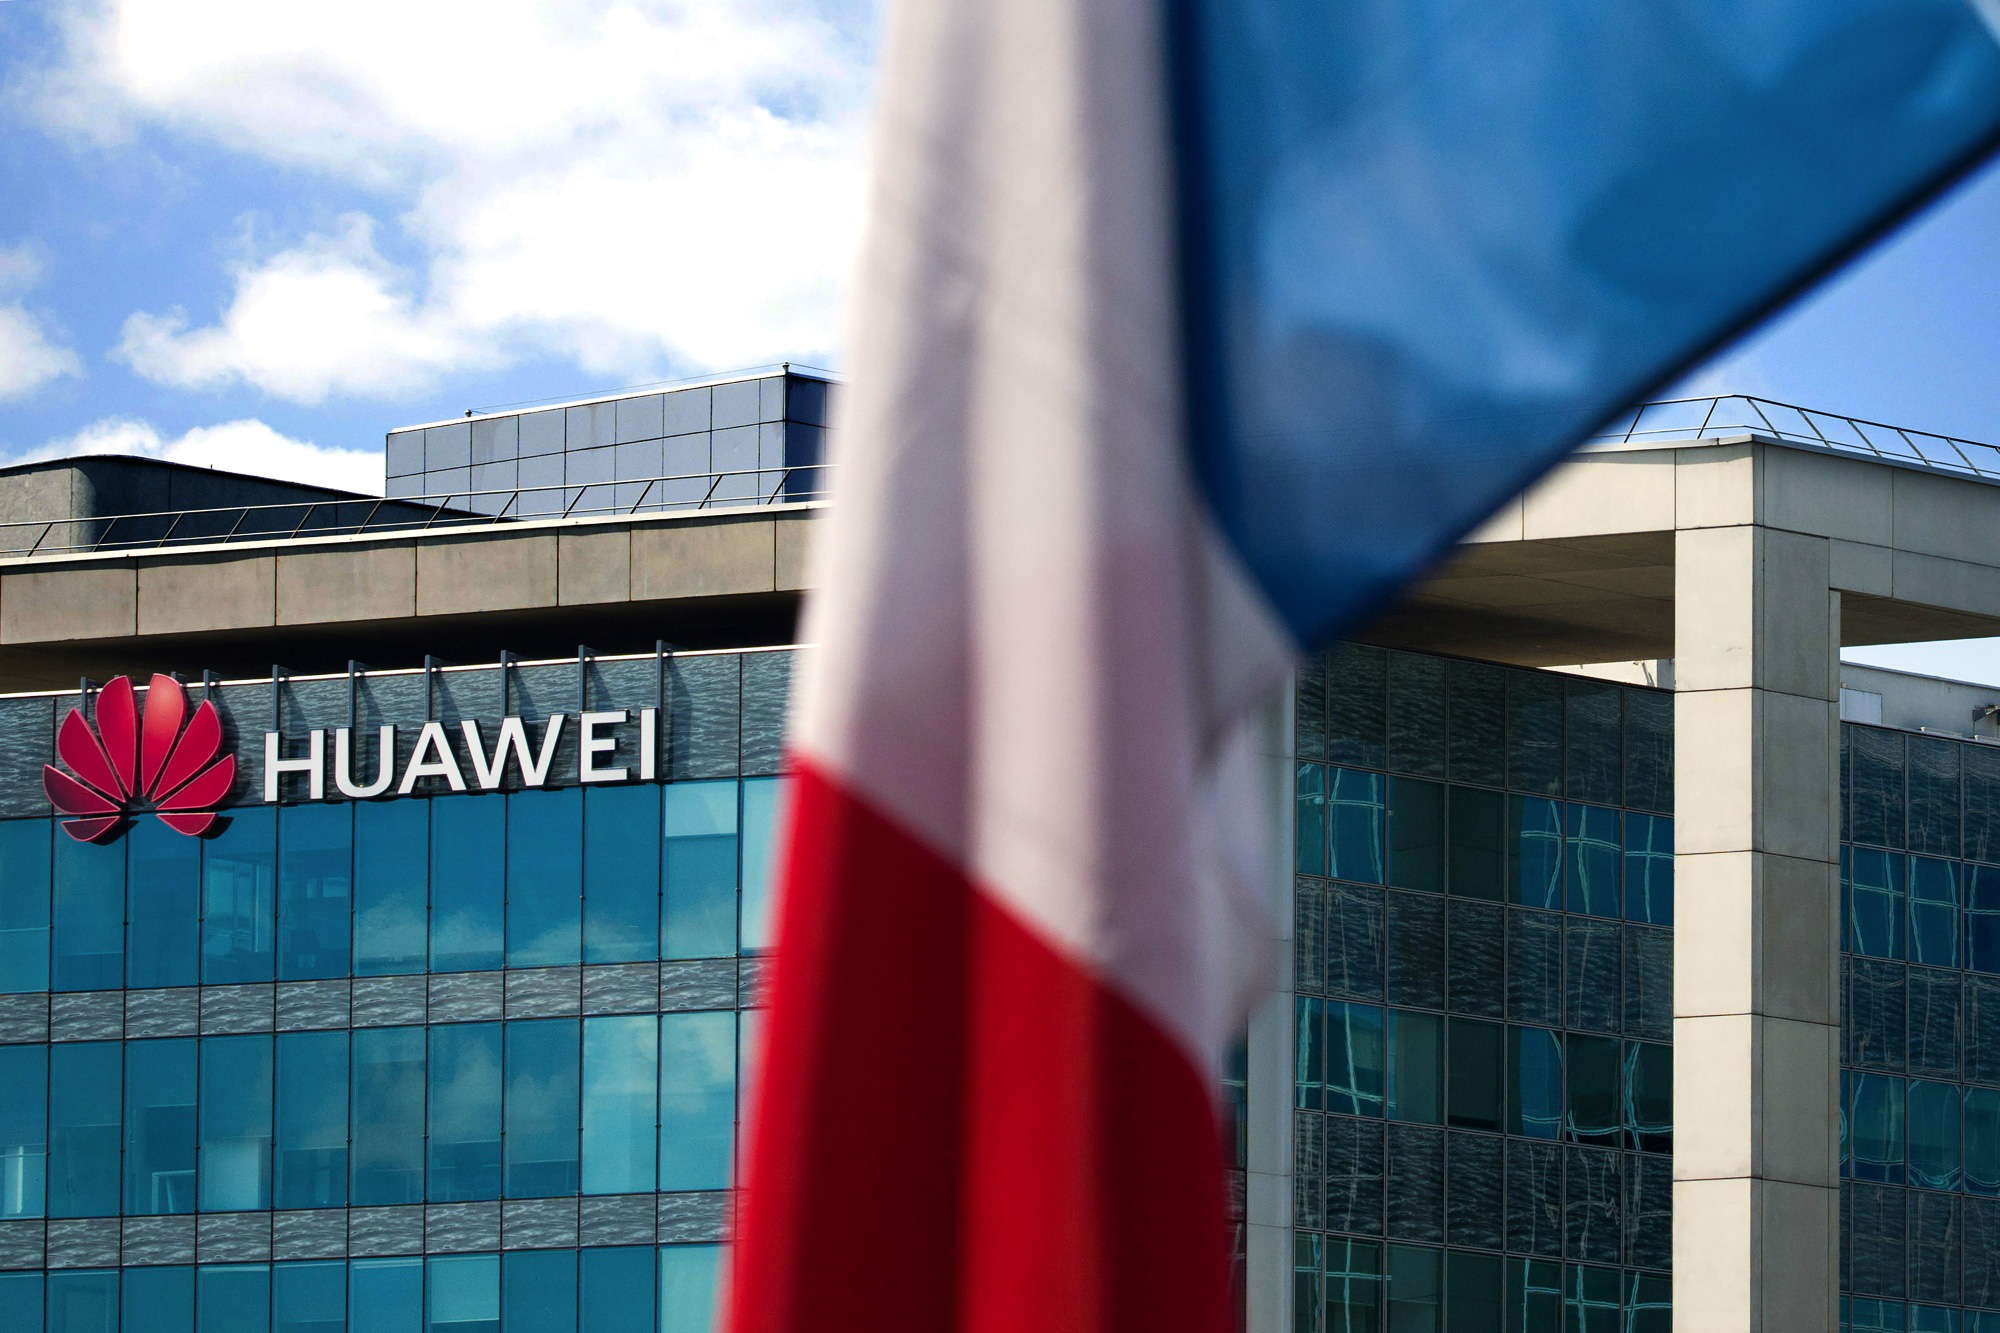 Cũng vào tháng 10/2020, các nhà lập pháp ở Anh đã thúc giục nước này đẩy nhanh việc loại bỏ thiết bị của Huawei khỏi cơ sở hạ tầng di động 5G của mình, khi cho rằng Huawei đã thông đồng với chính phủ Trung Quốc. Ảnh: @Pixabay.